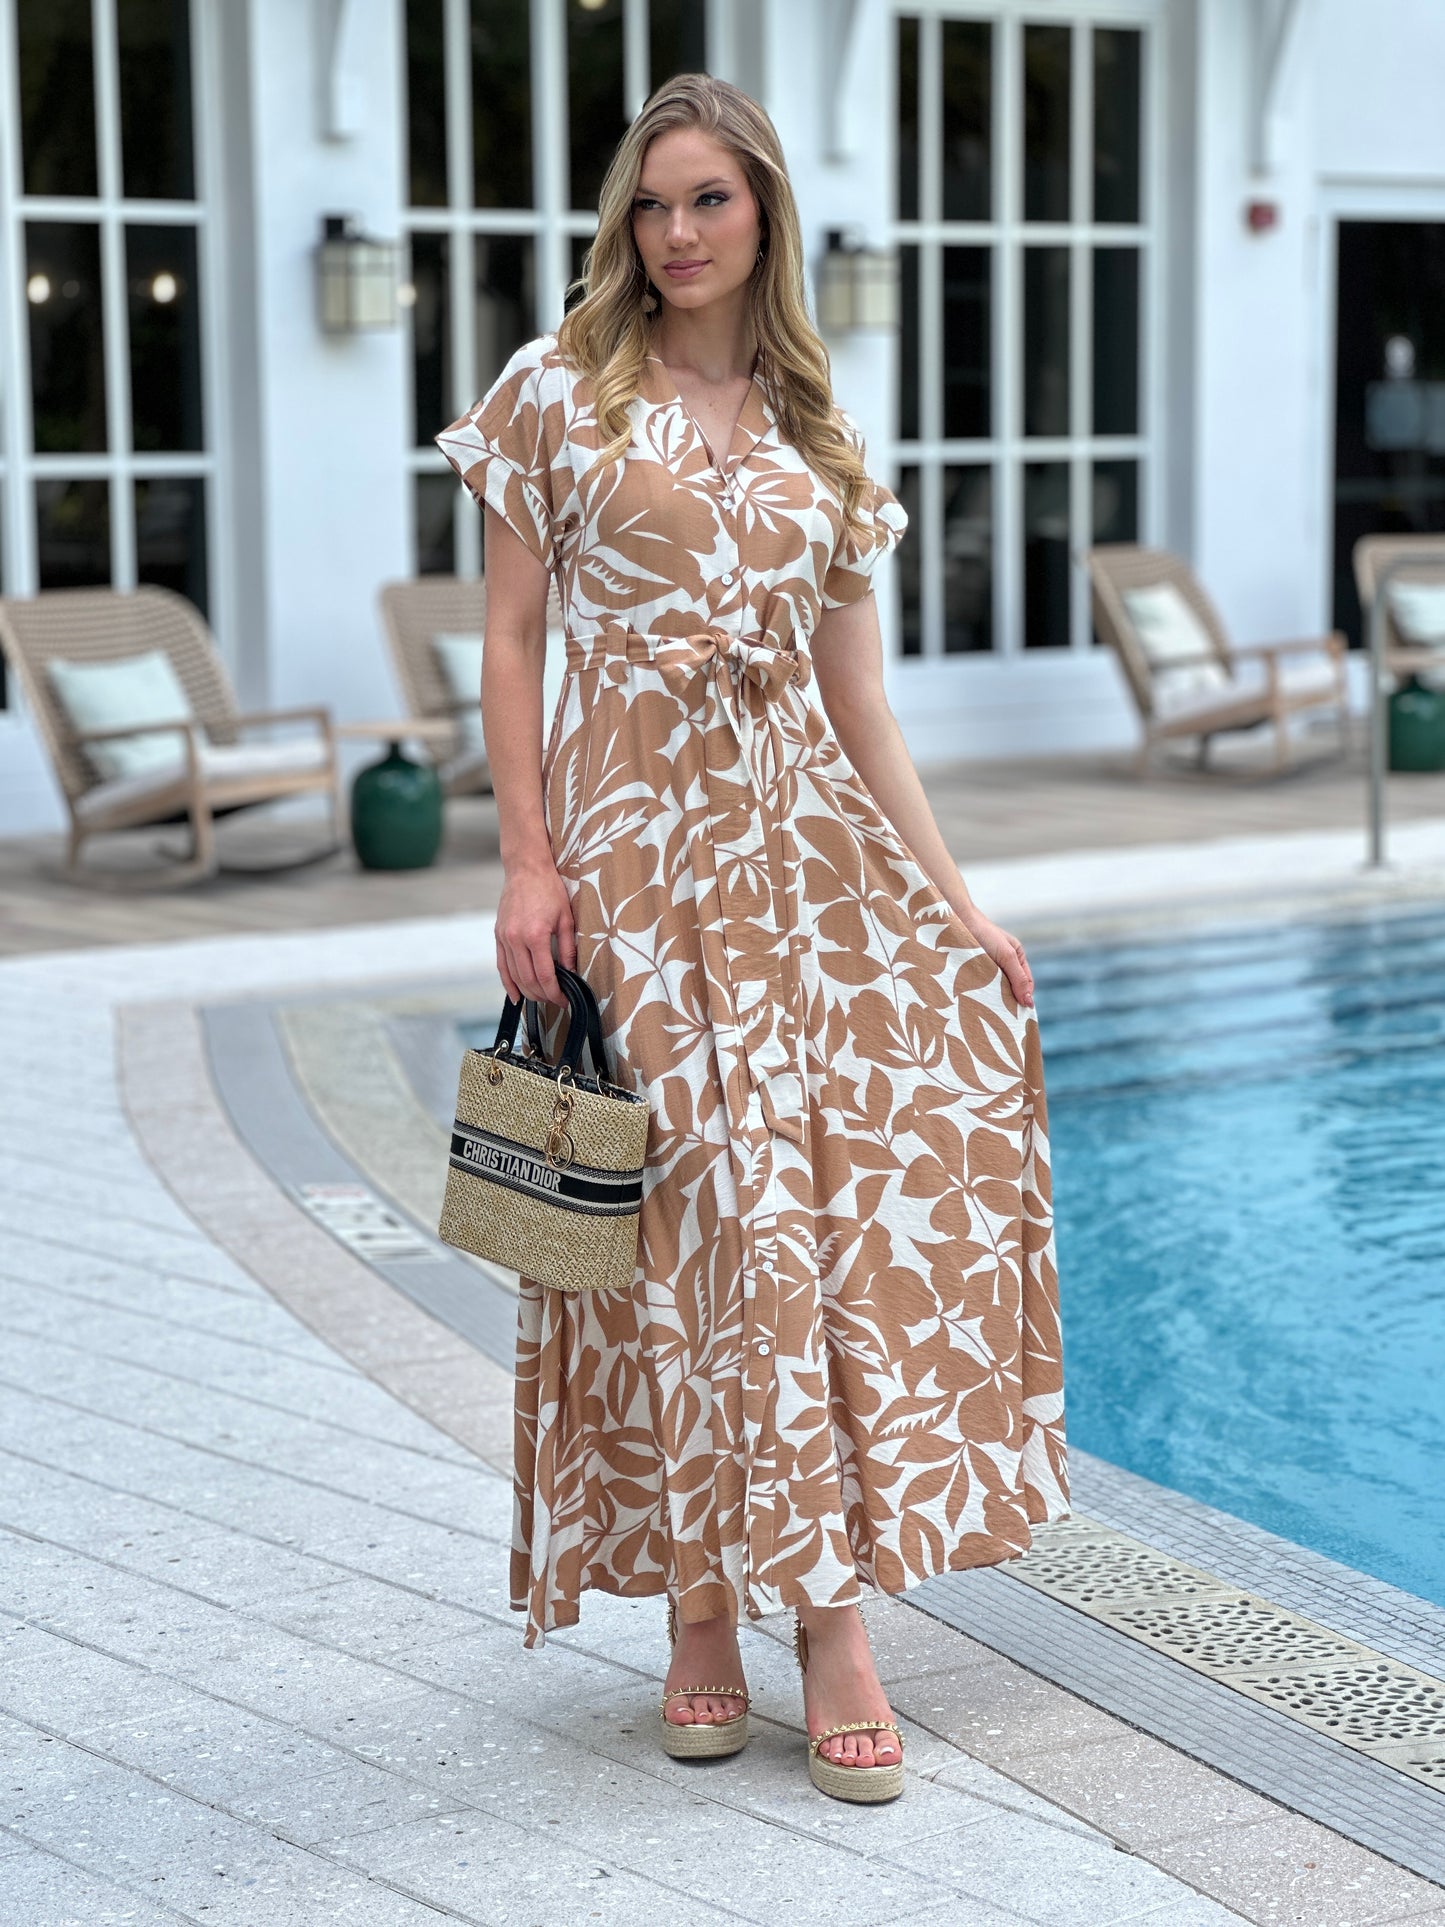 Miranda Beige/White Print Dress